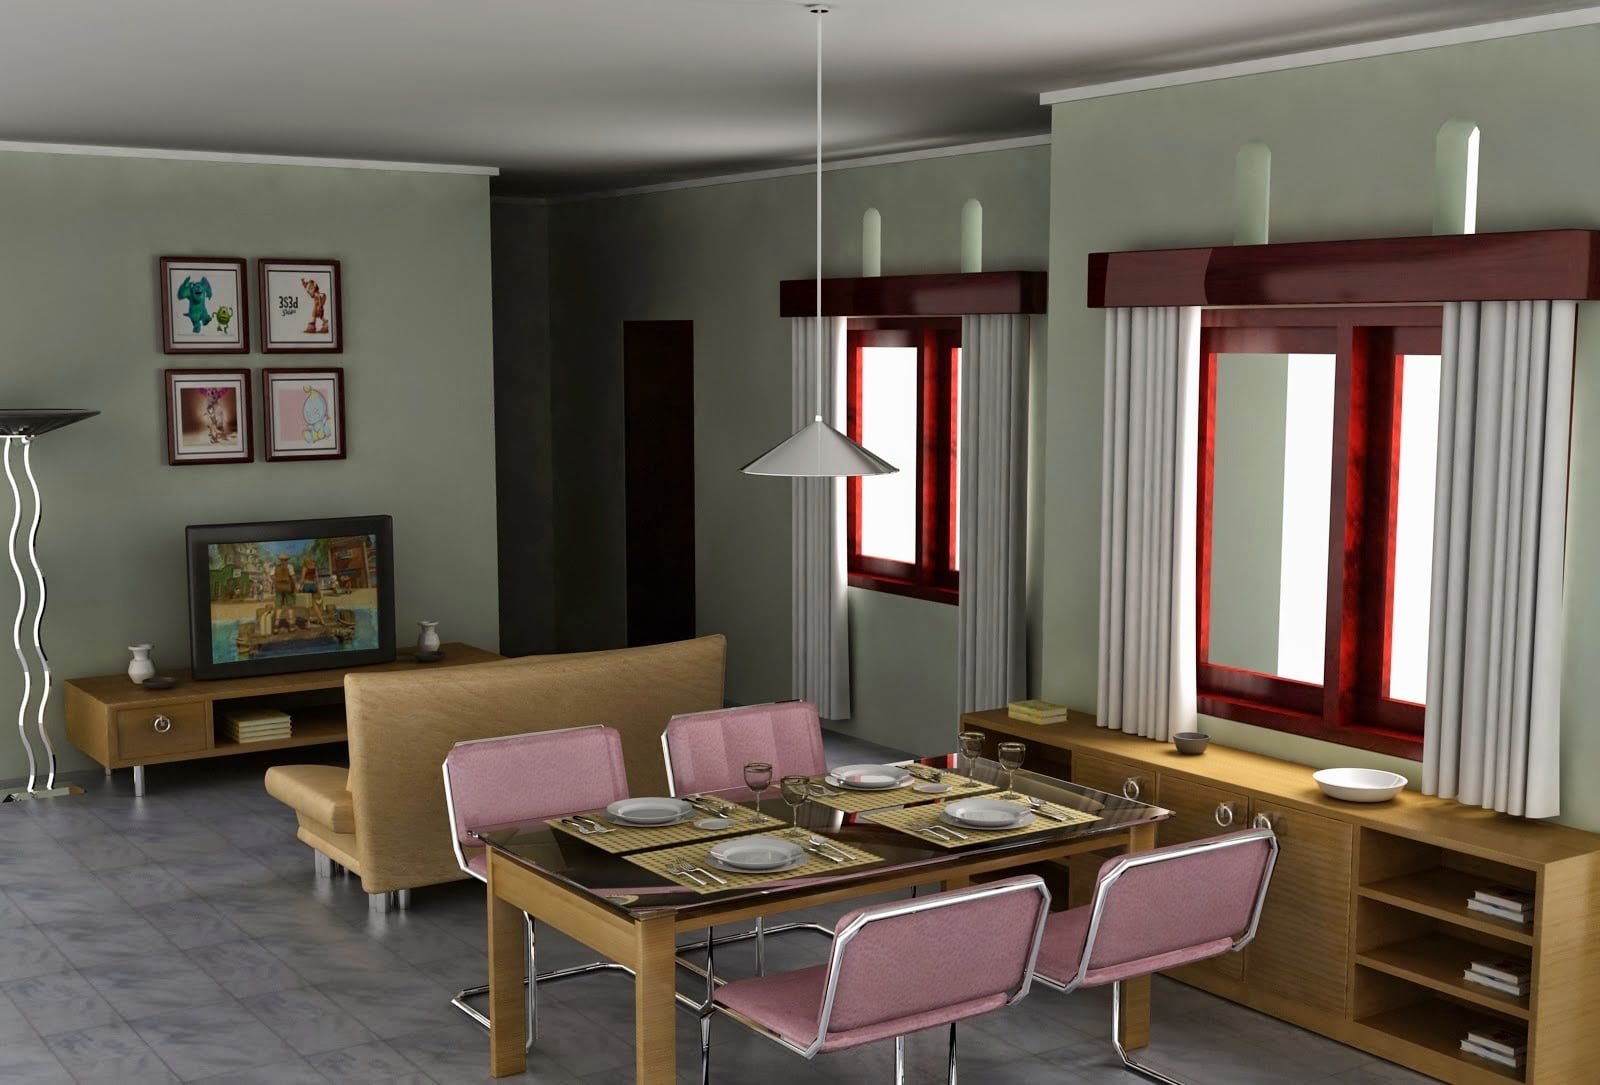 51 Ide Cantik Desain Ruang Keluarga Rumah Minimalis Trend Masa Kini